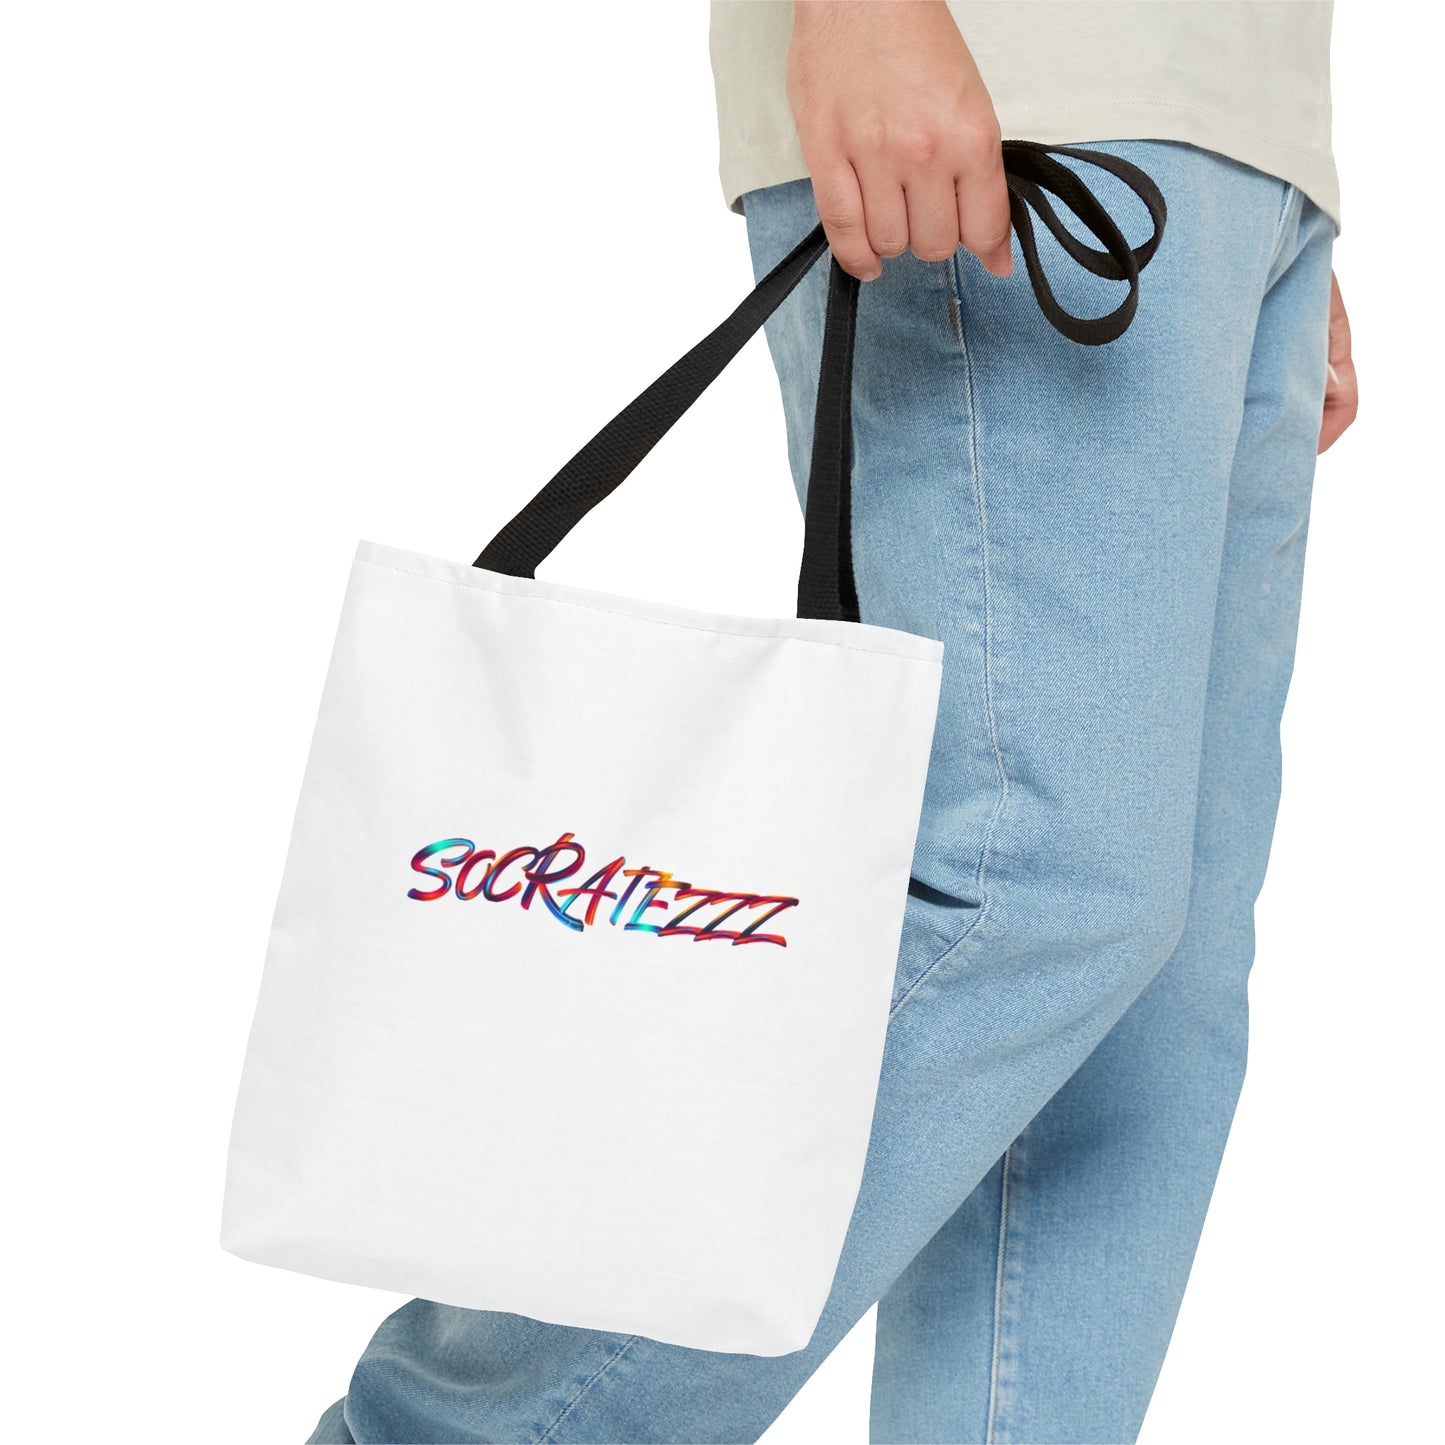 Socratezzz - Tote Bag (AOP)